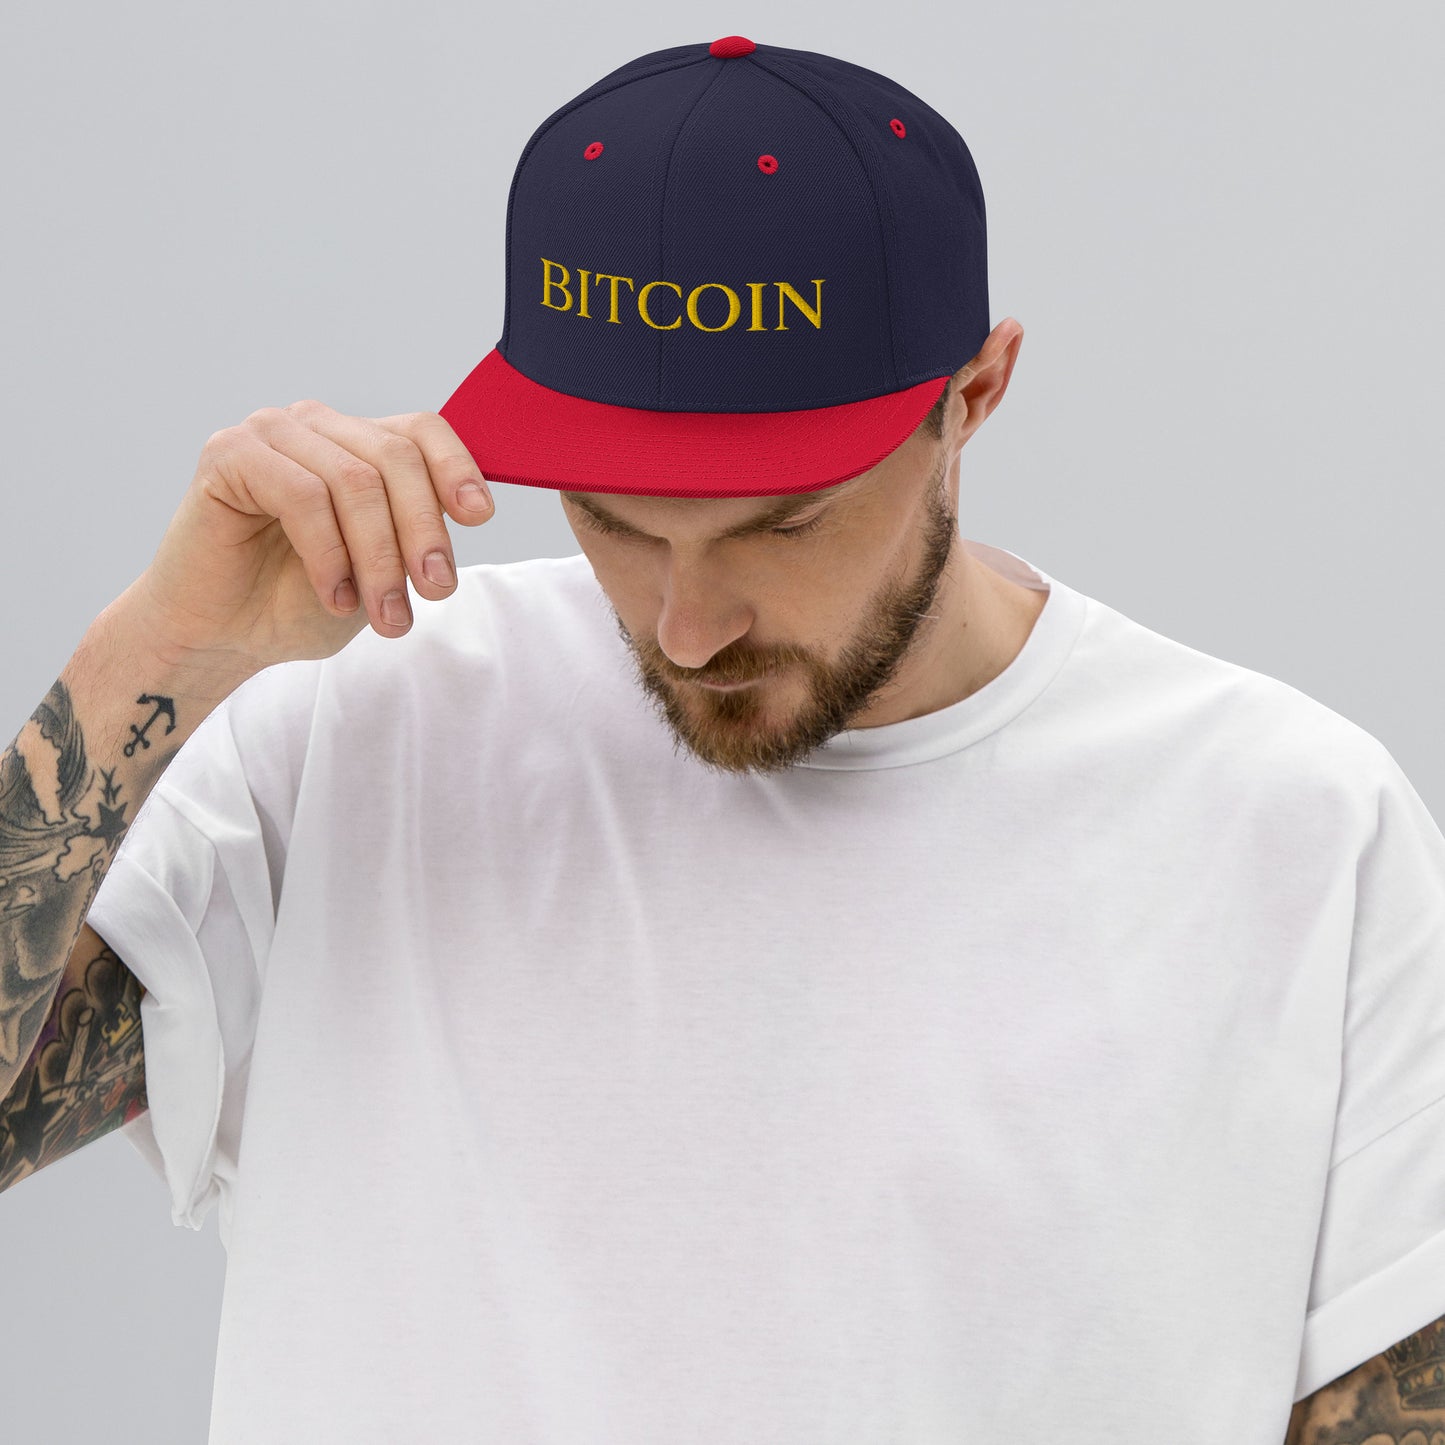 Bitcoin Modern Snapback Hat